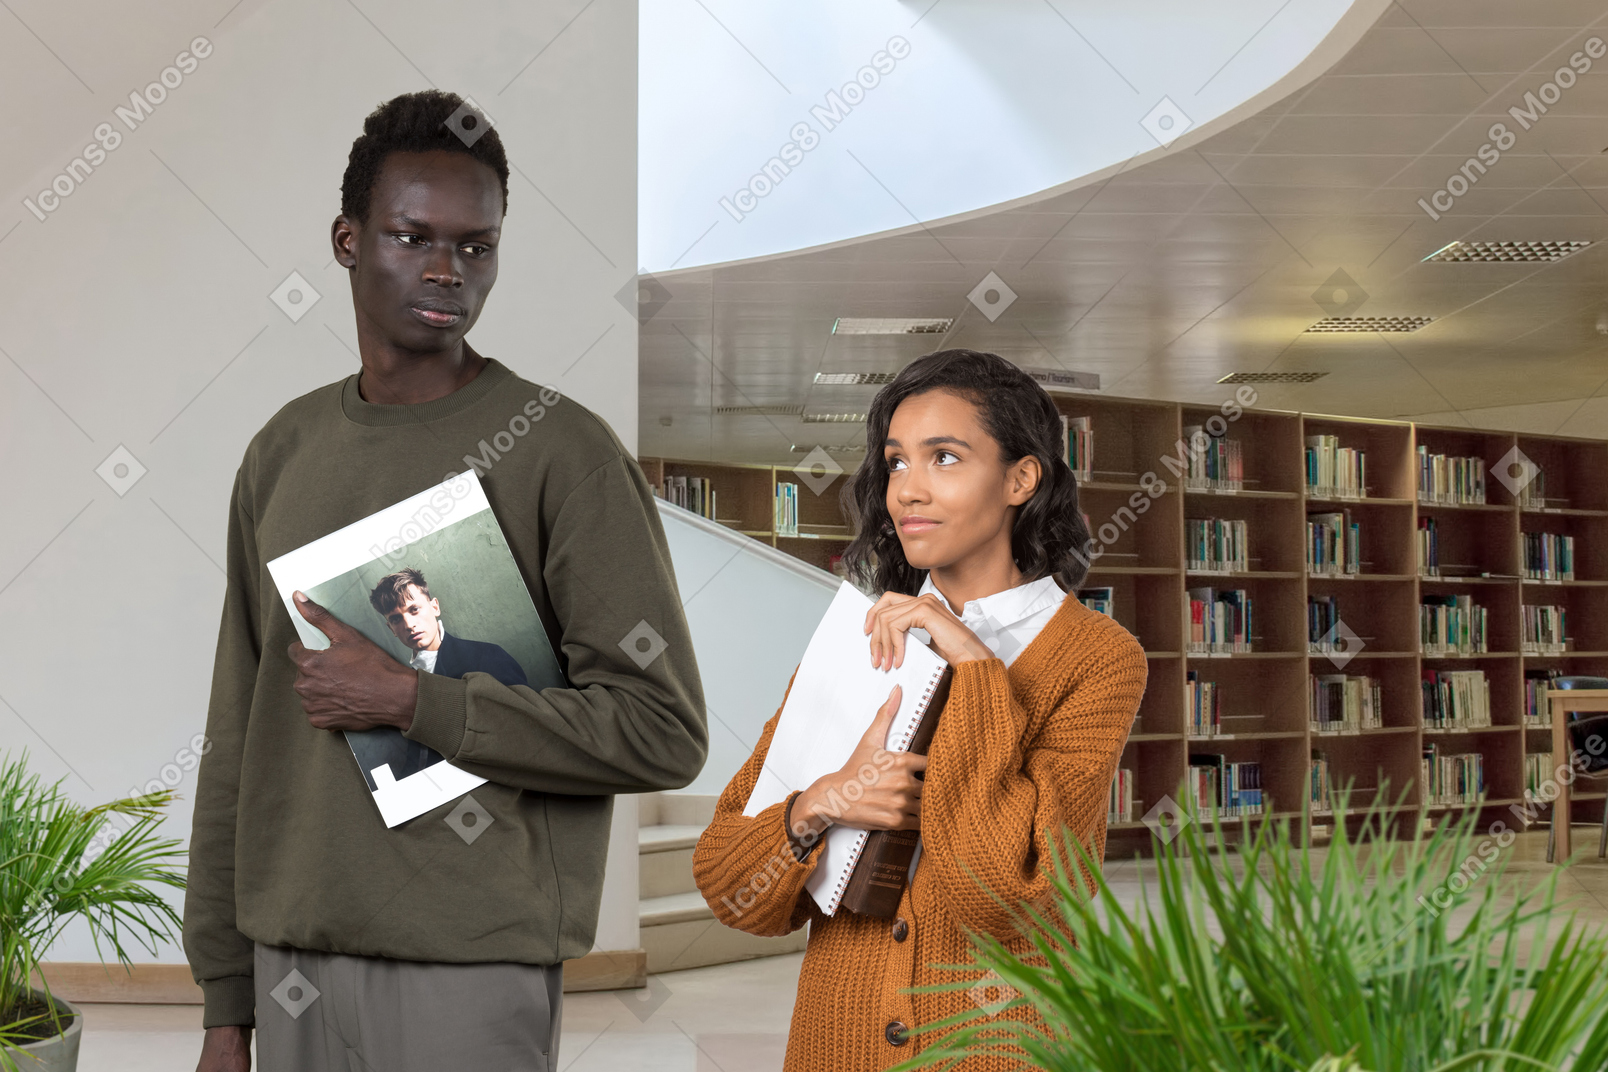 Uma mulher vestida de preto, com livros em suas mãos, olha carinhosamente para o homem negro sério na biblioteca, que não percebe seu olhar